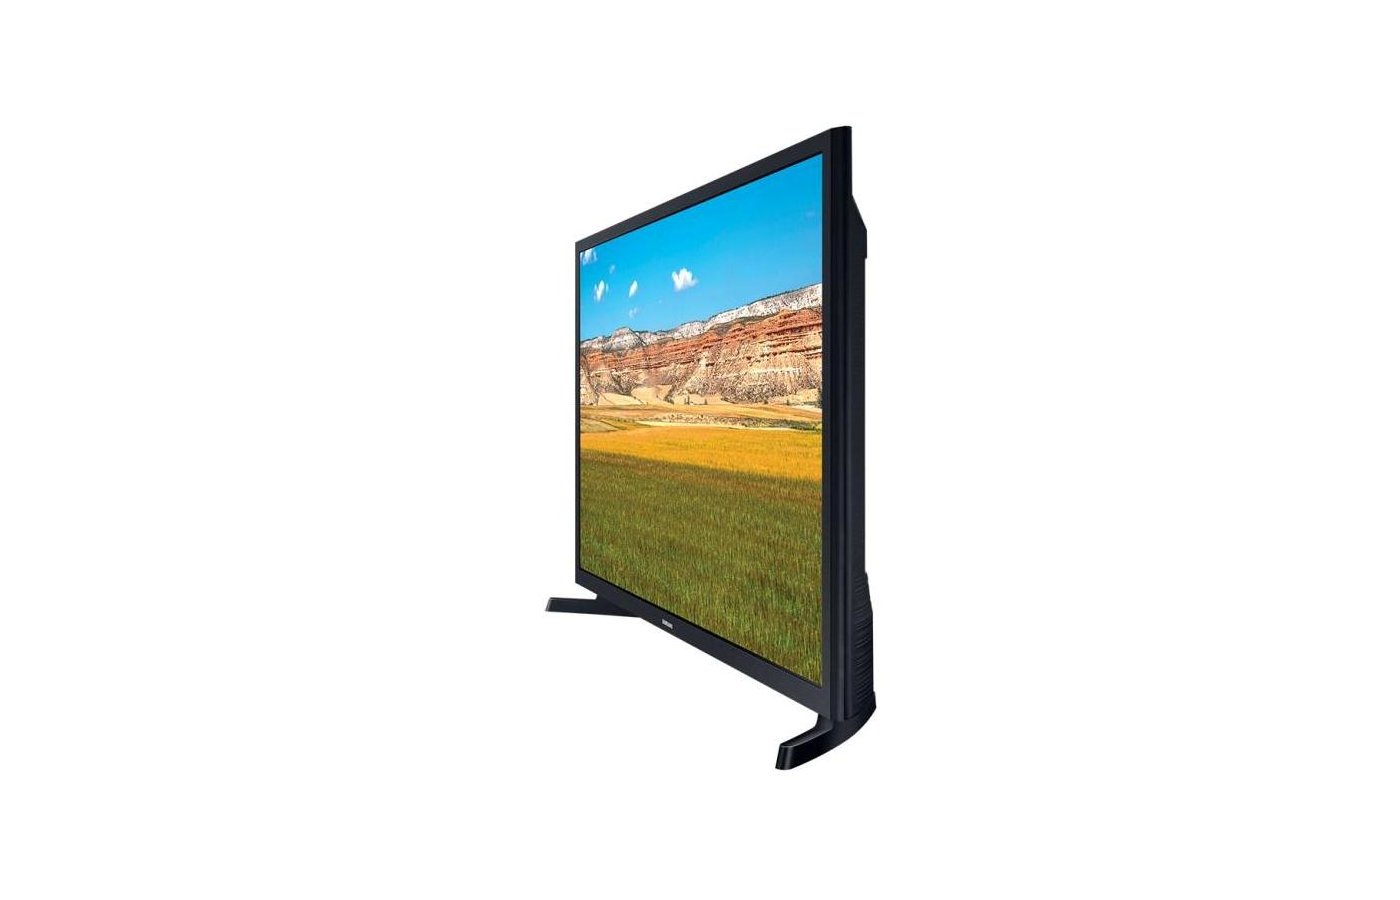 Samsung 32 Fhd Smart Tv T5300